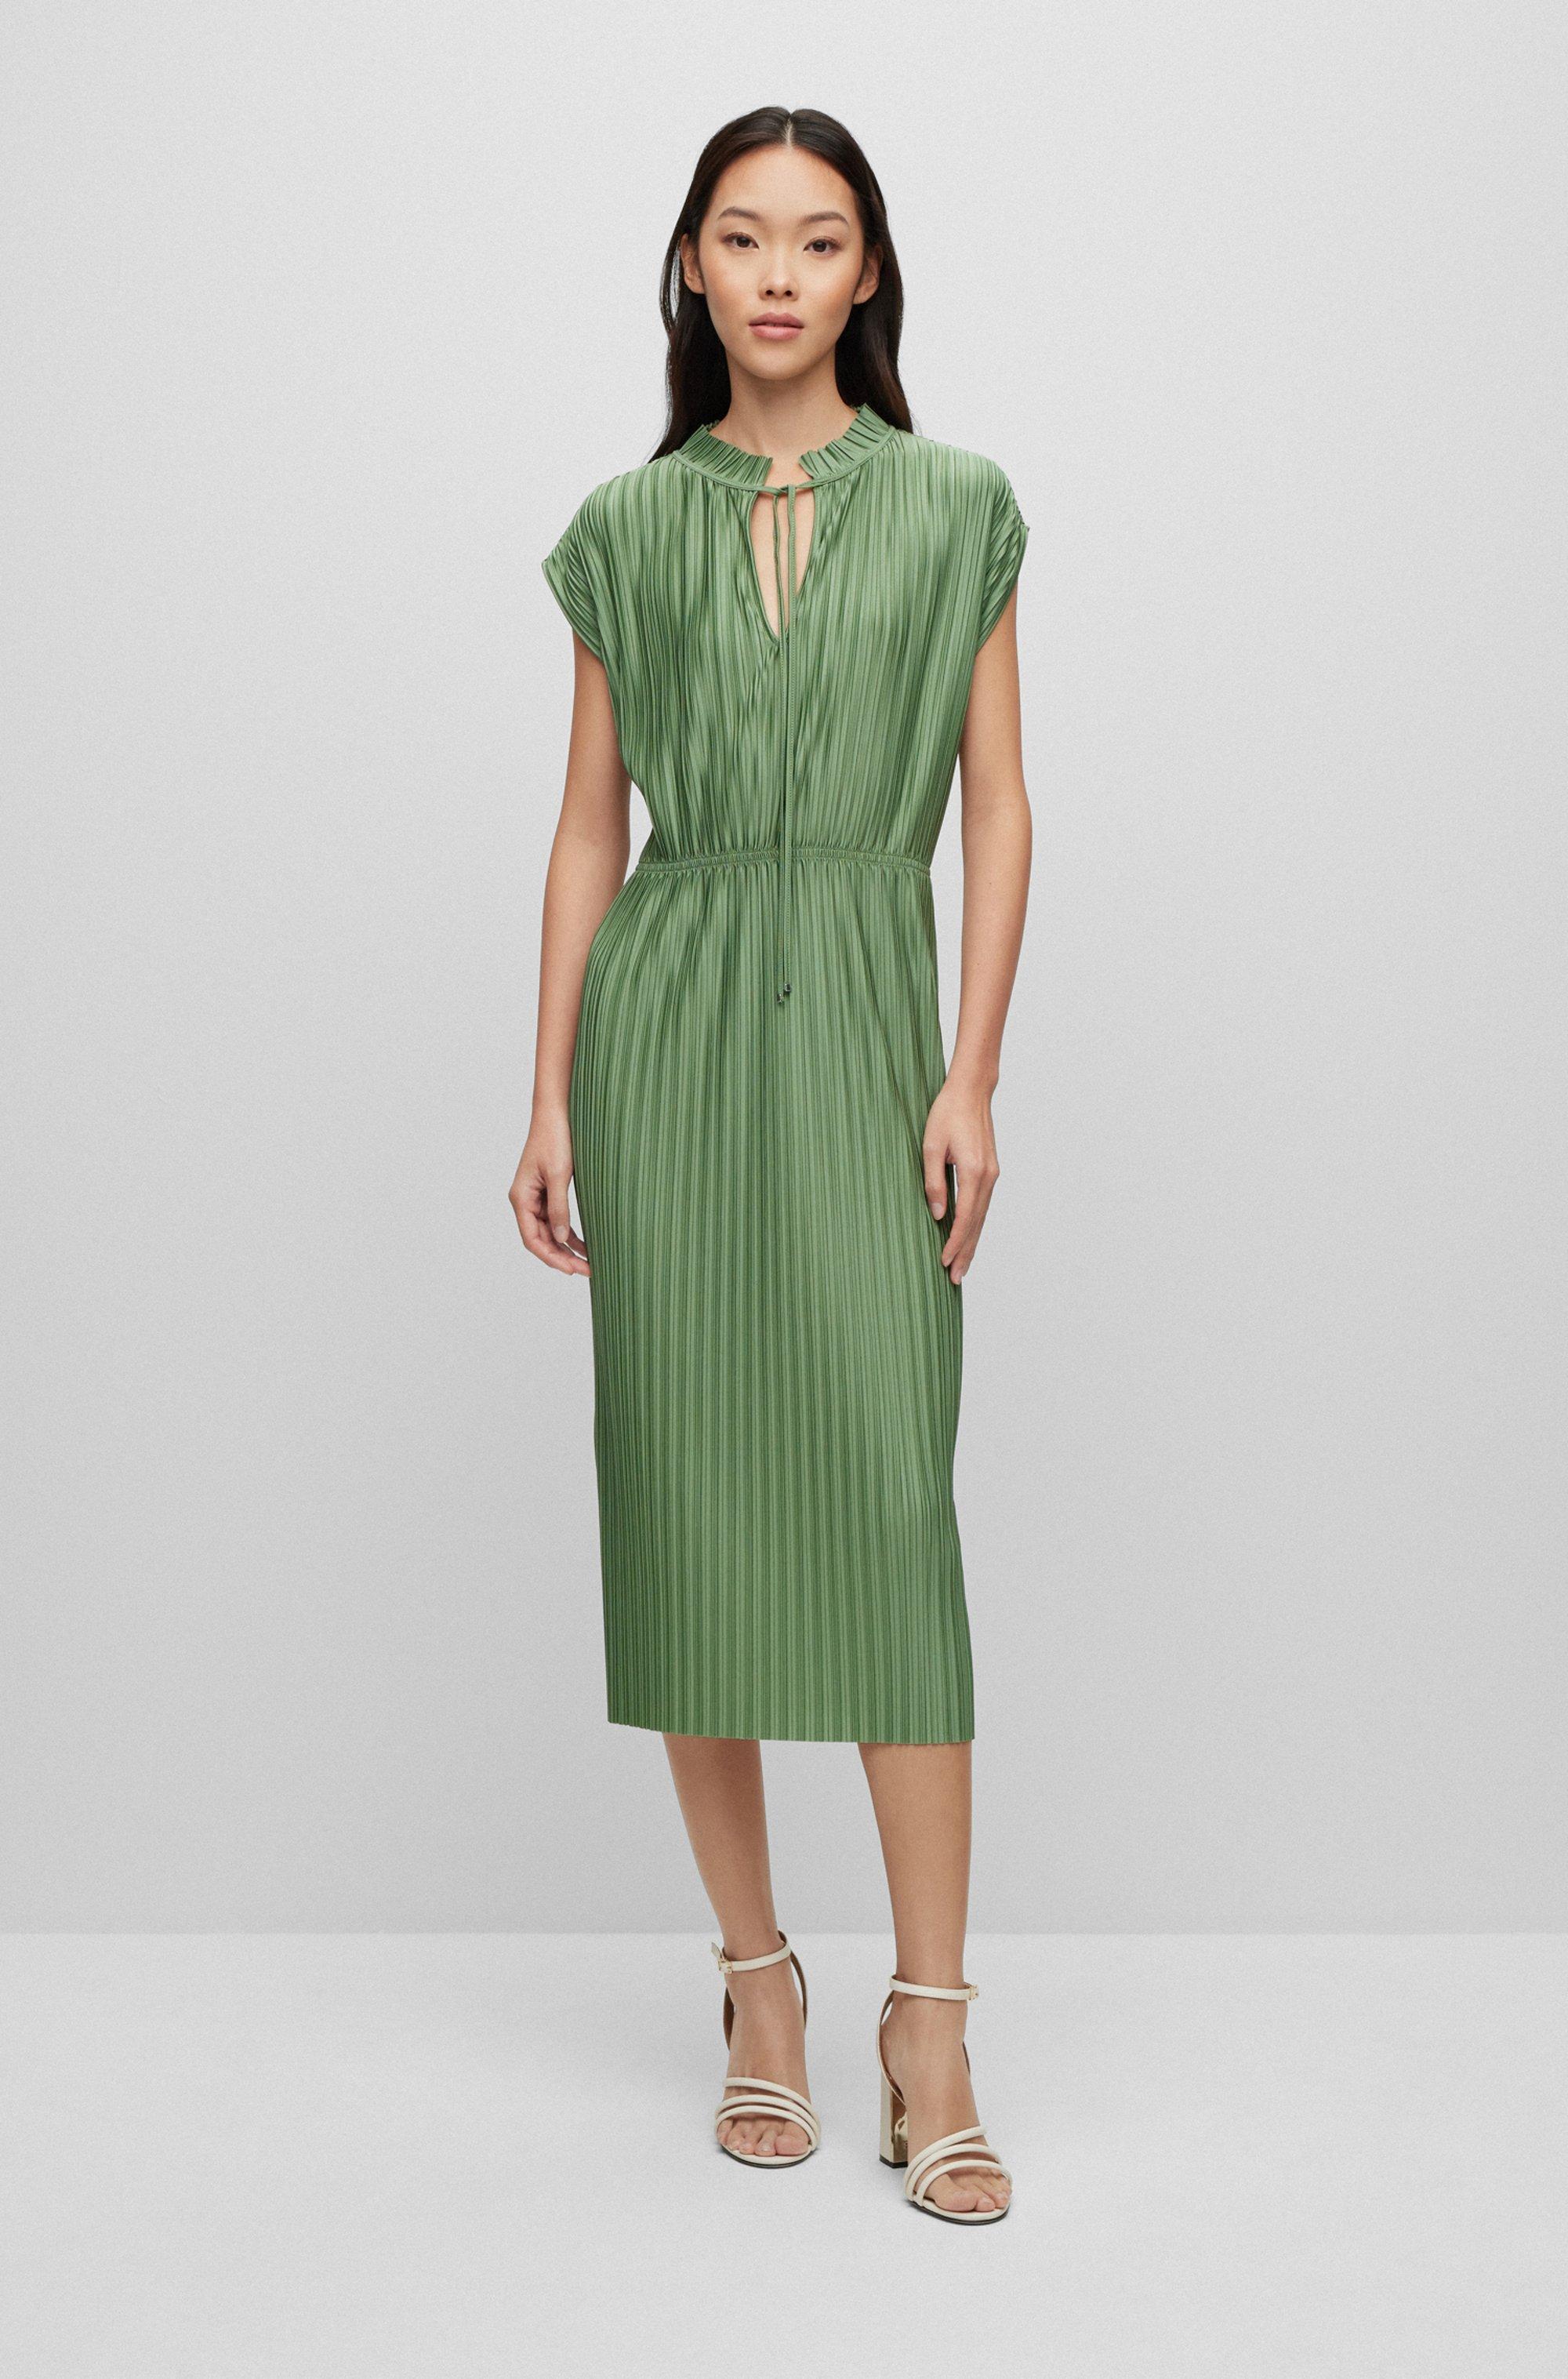 BOSS by HUGO BOSS Plissé Jersey Dress With Tie Neckline in Green | Lyst